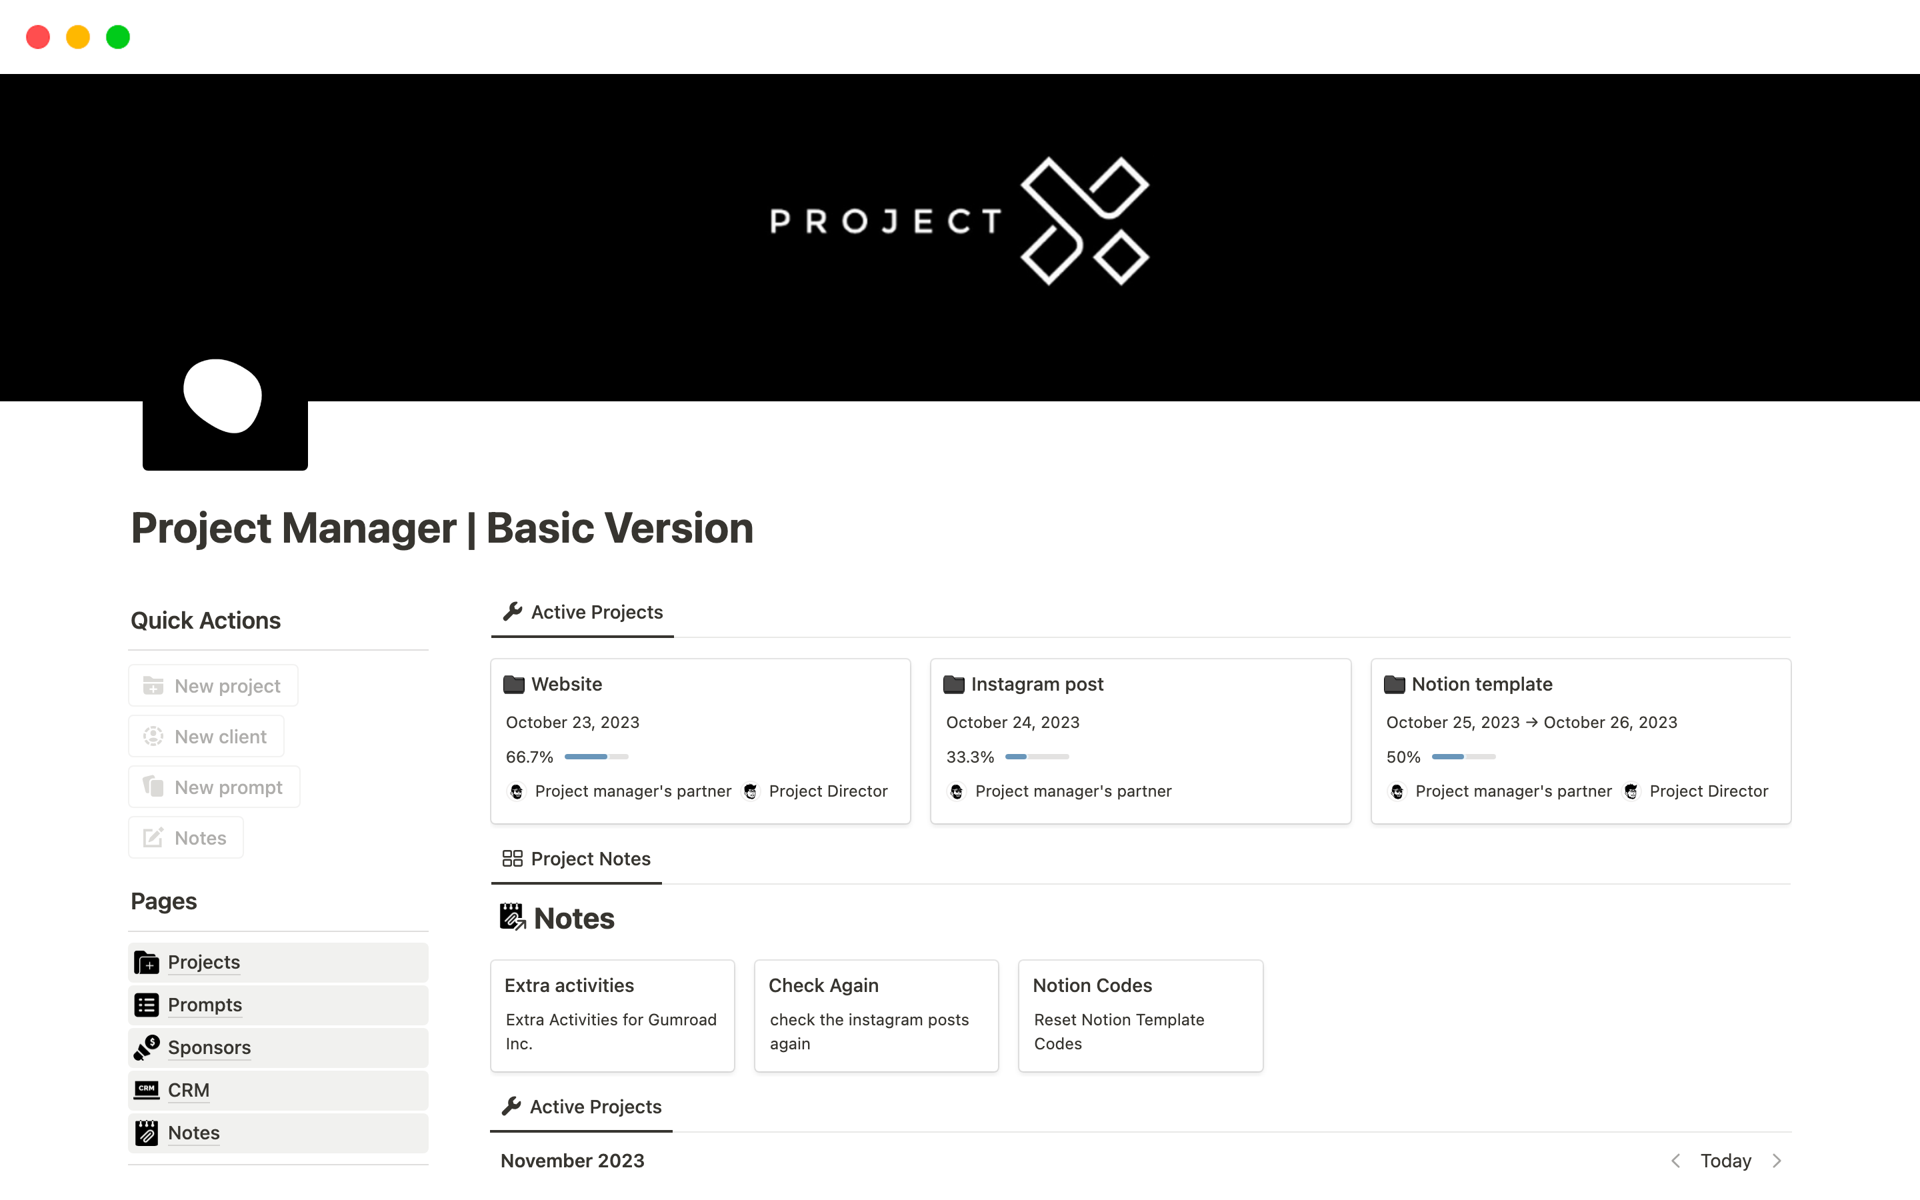 Aperçu du modèle de Project Manager | Basic Version